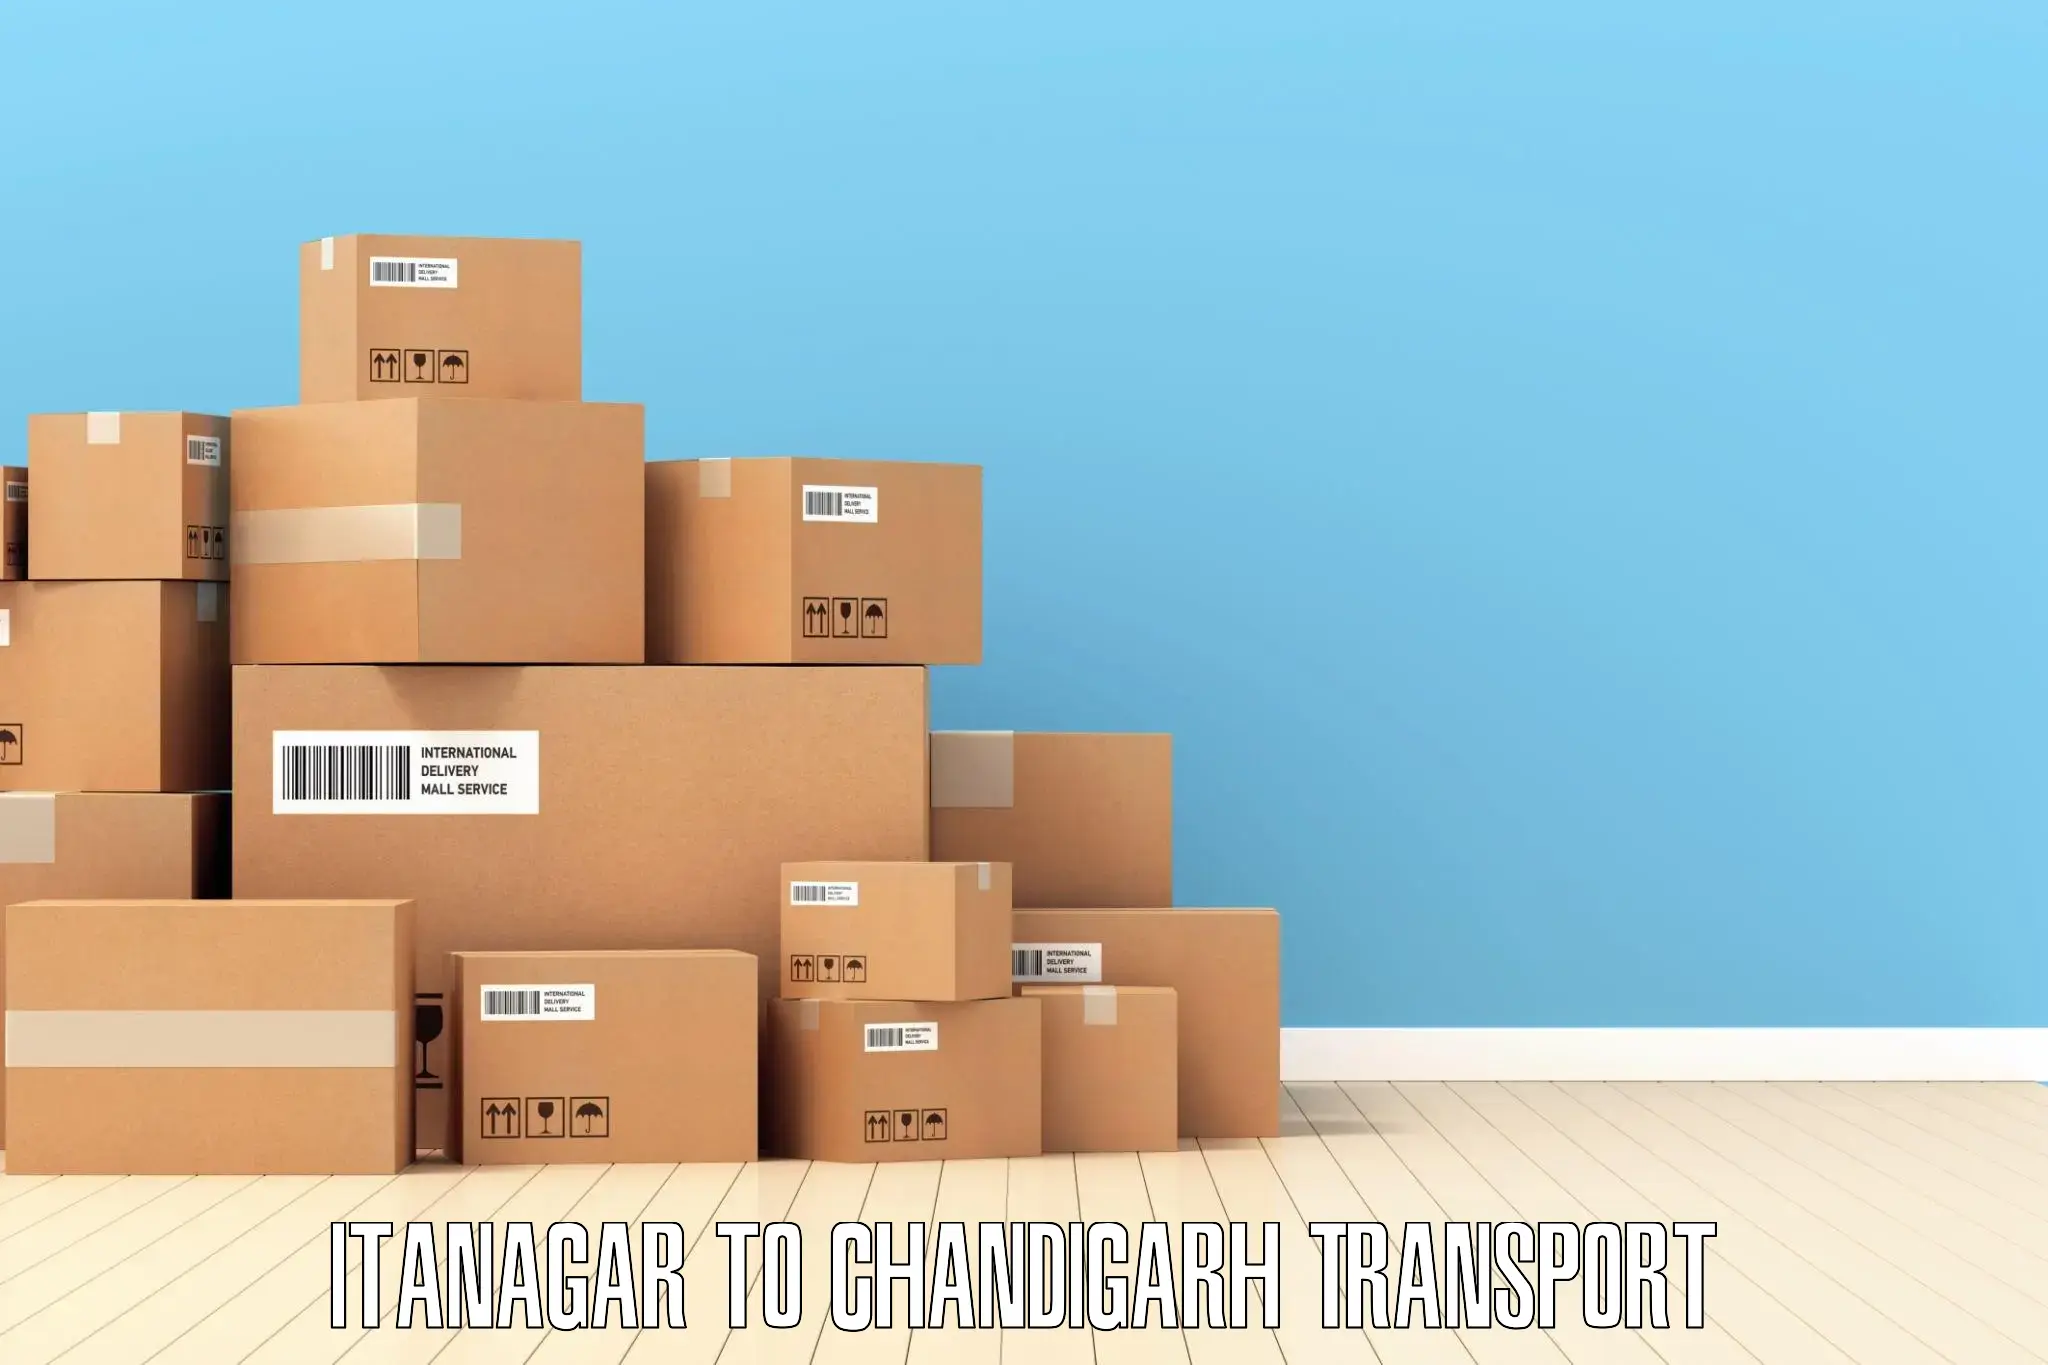 Nearest transport service Itanagar to Chandigarh